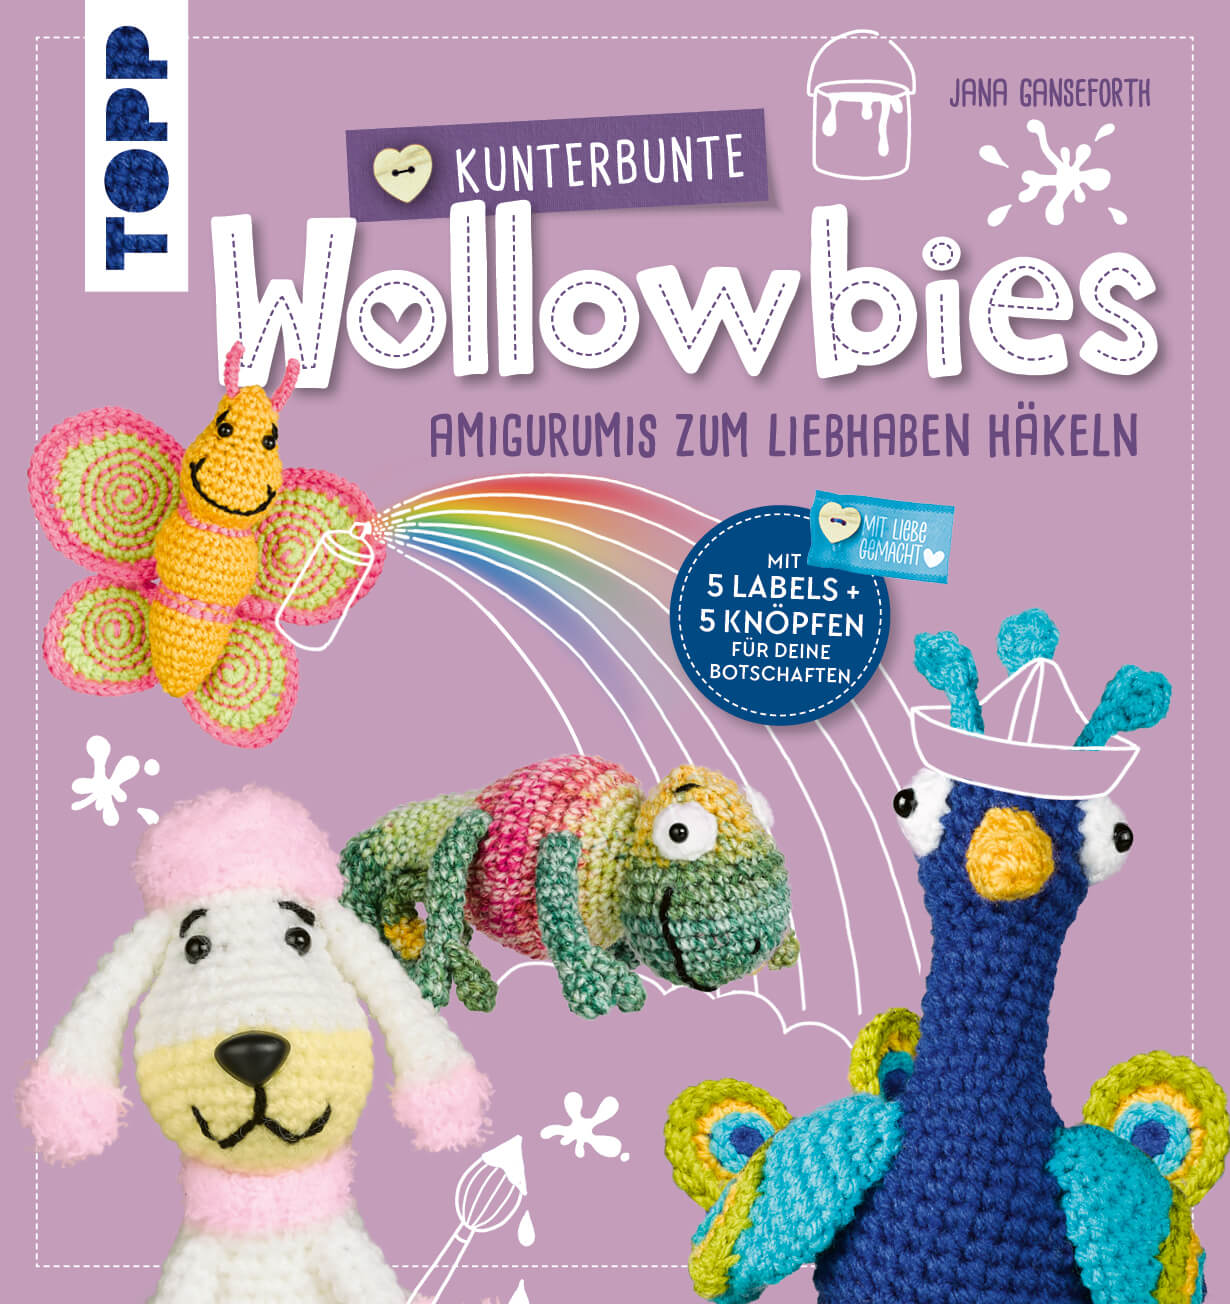 Wollowbies - 20 Amigurumis häkeln - Buch von TOPP